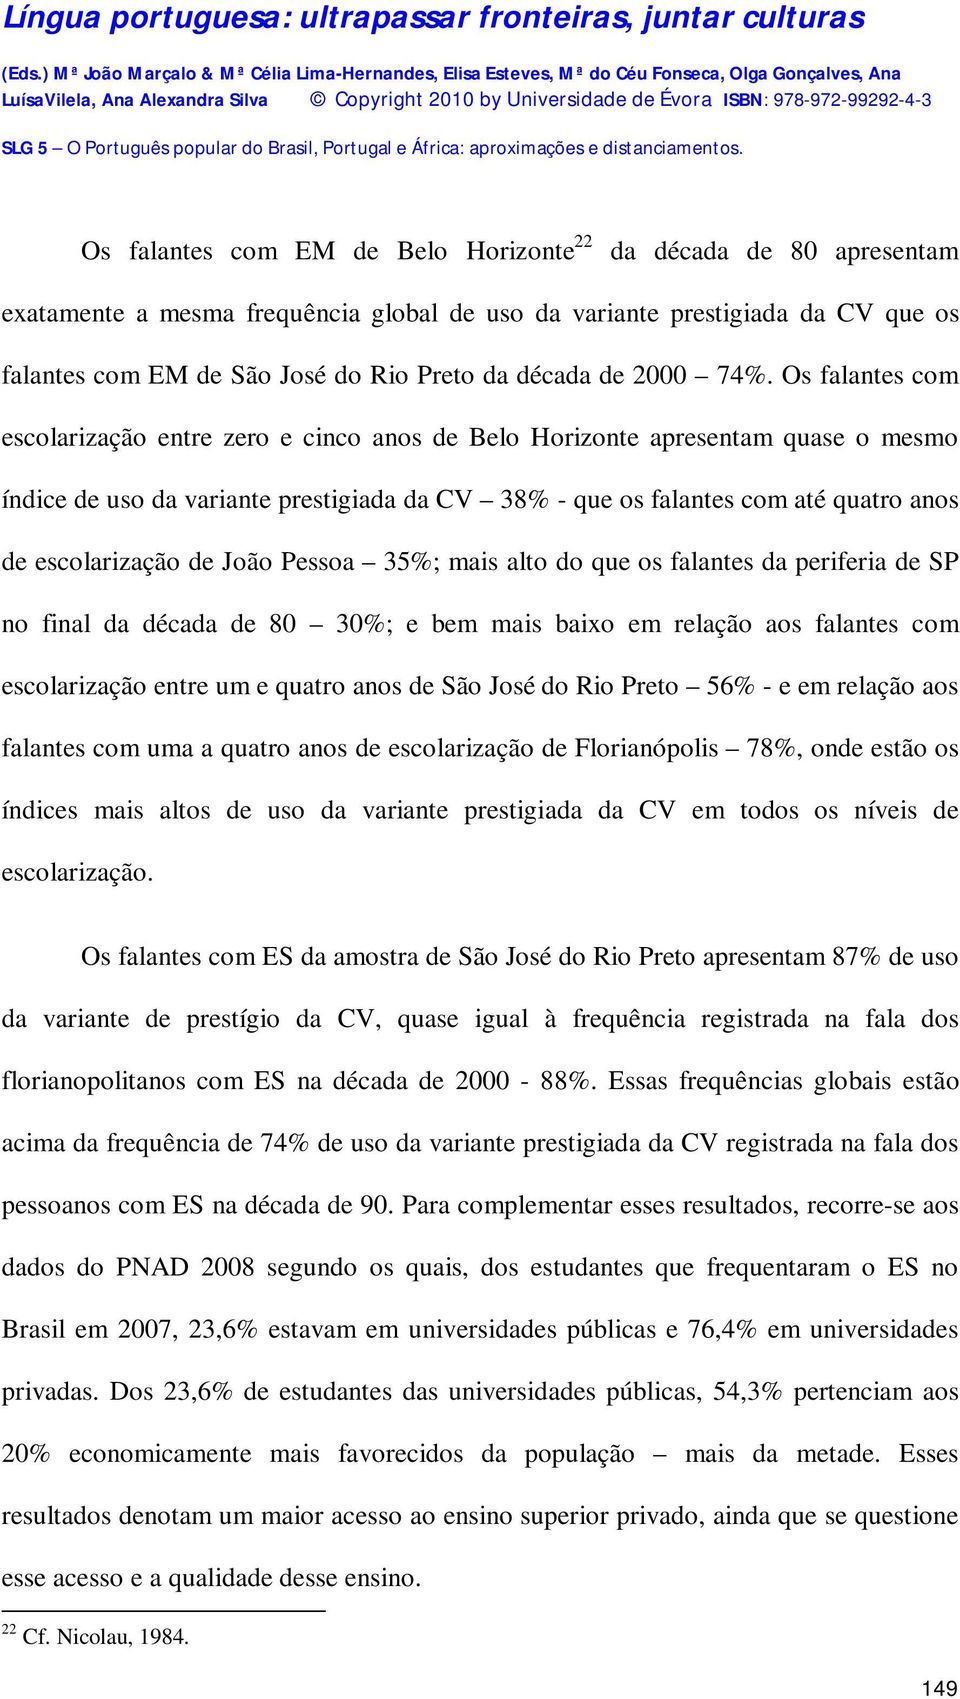 Os falantes com escolarização entre zero e cinco anos de Belo Horizonte apresentam quase o mesmo índice de uso da variante prestigiada da CV 38% - que os falantes com até quatro anos de escolarização